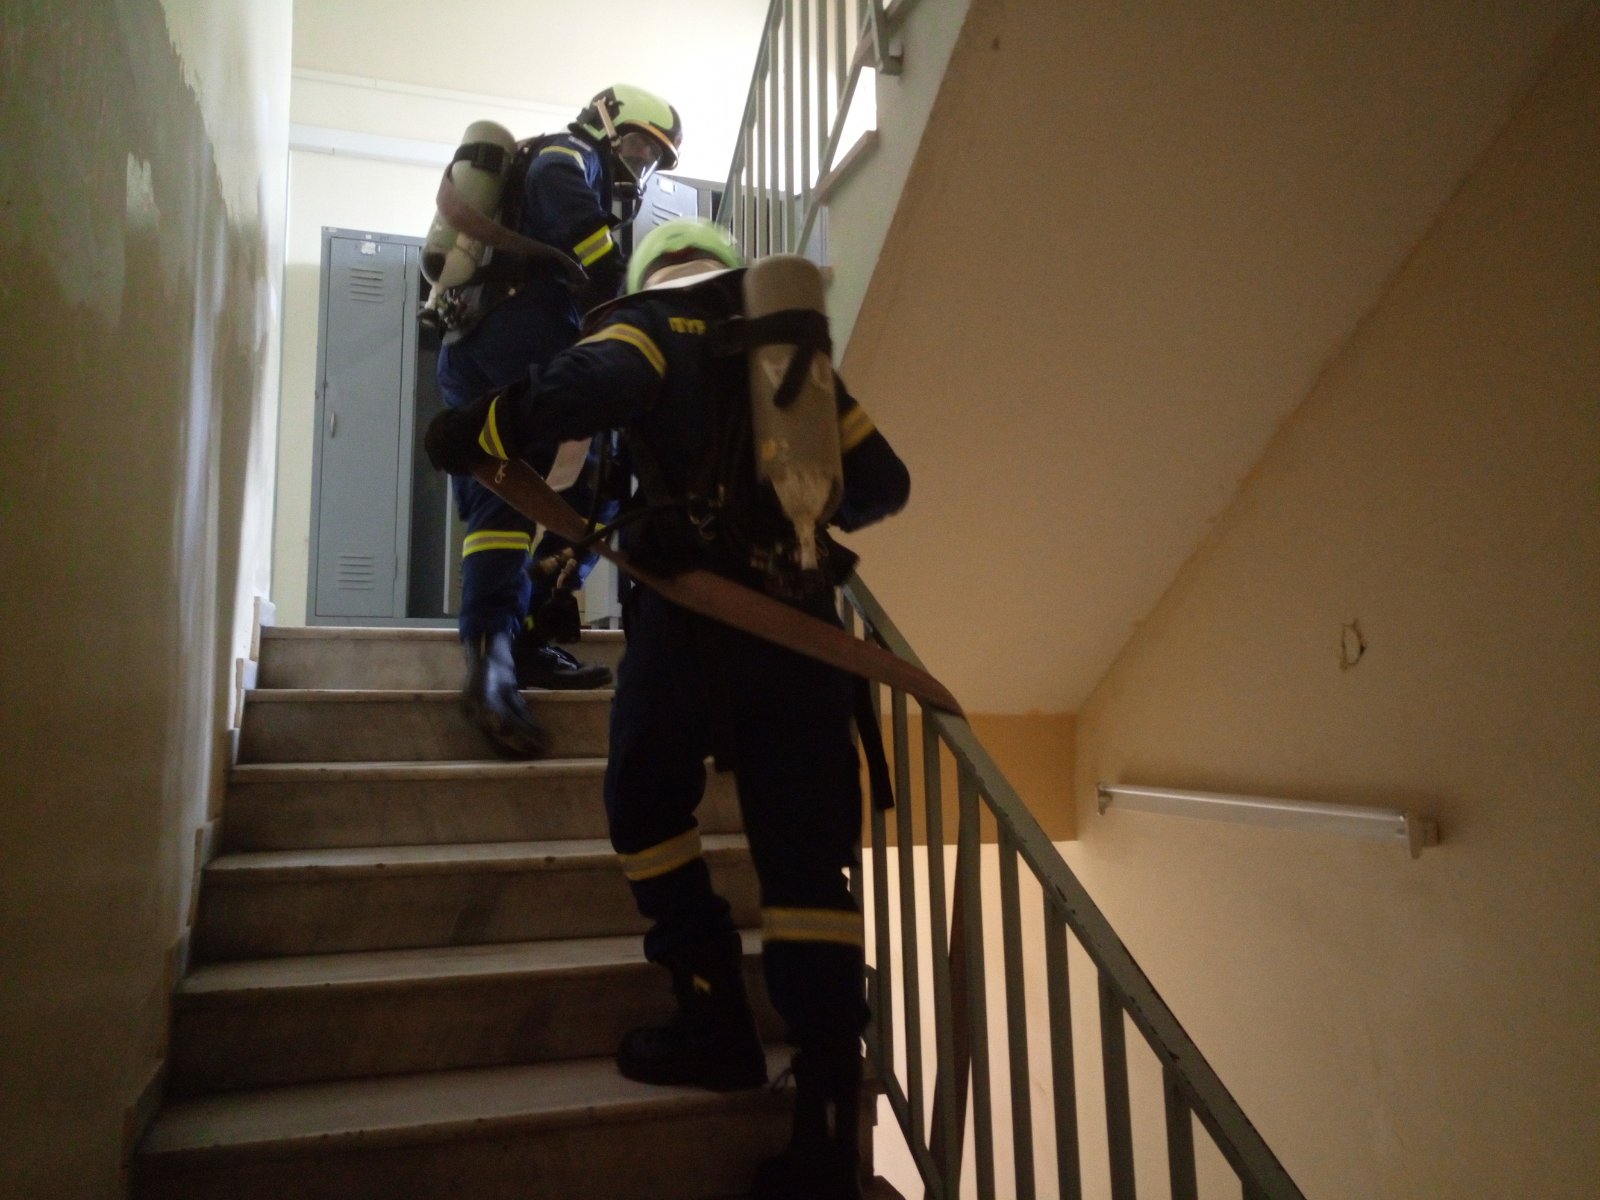 Πυροσβεστική Ακαδημία: Θεωρητική και πρακτική εκπαίδευση στην προσβολή πυρκαγιών (Φώτο)